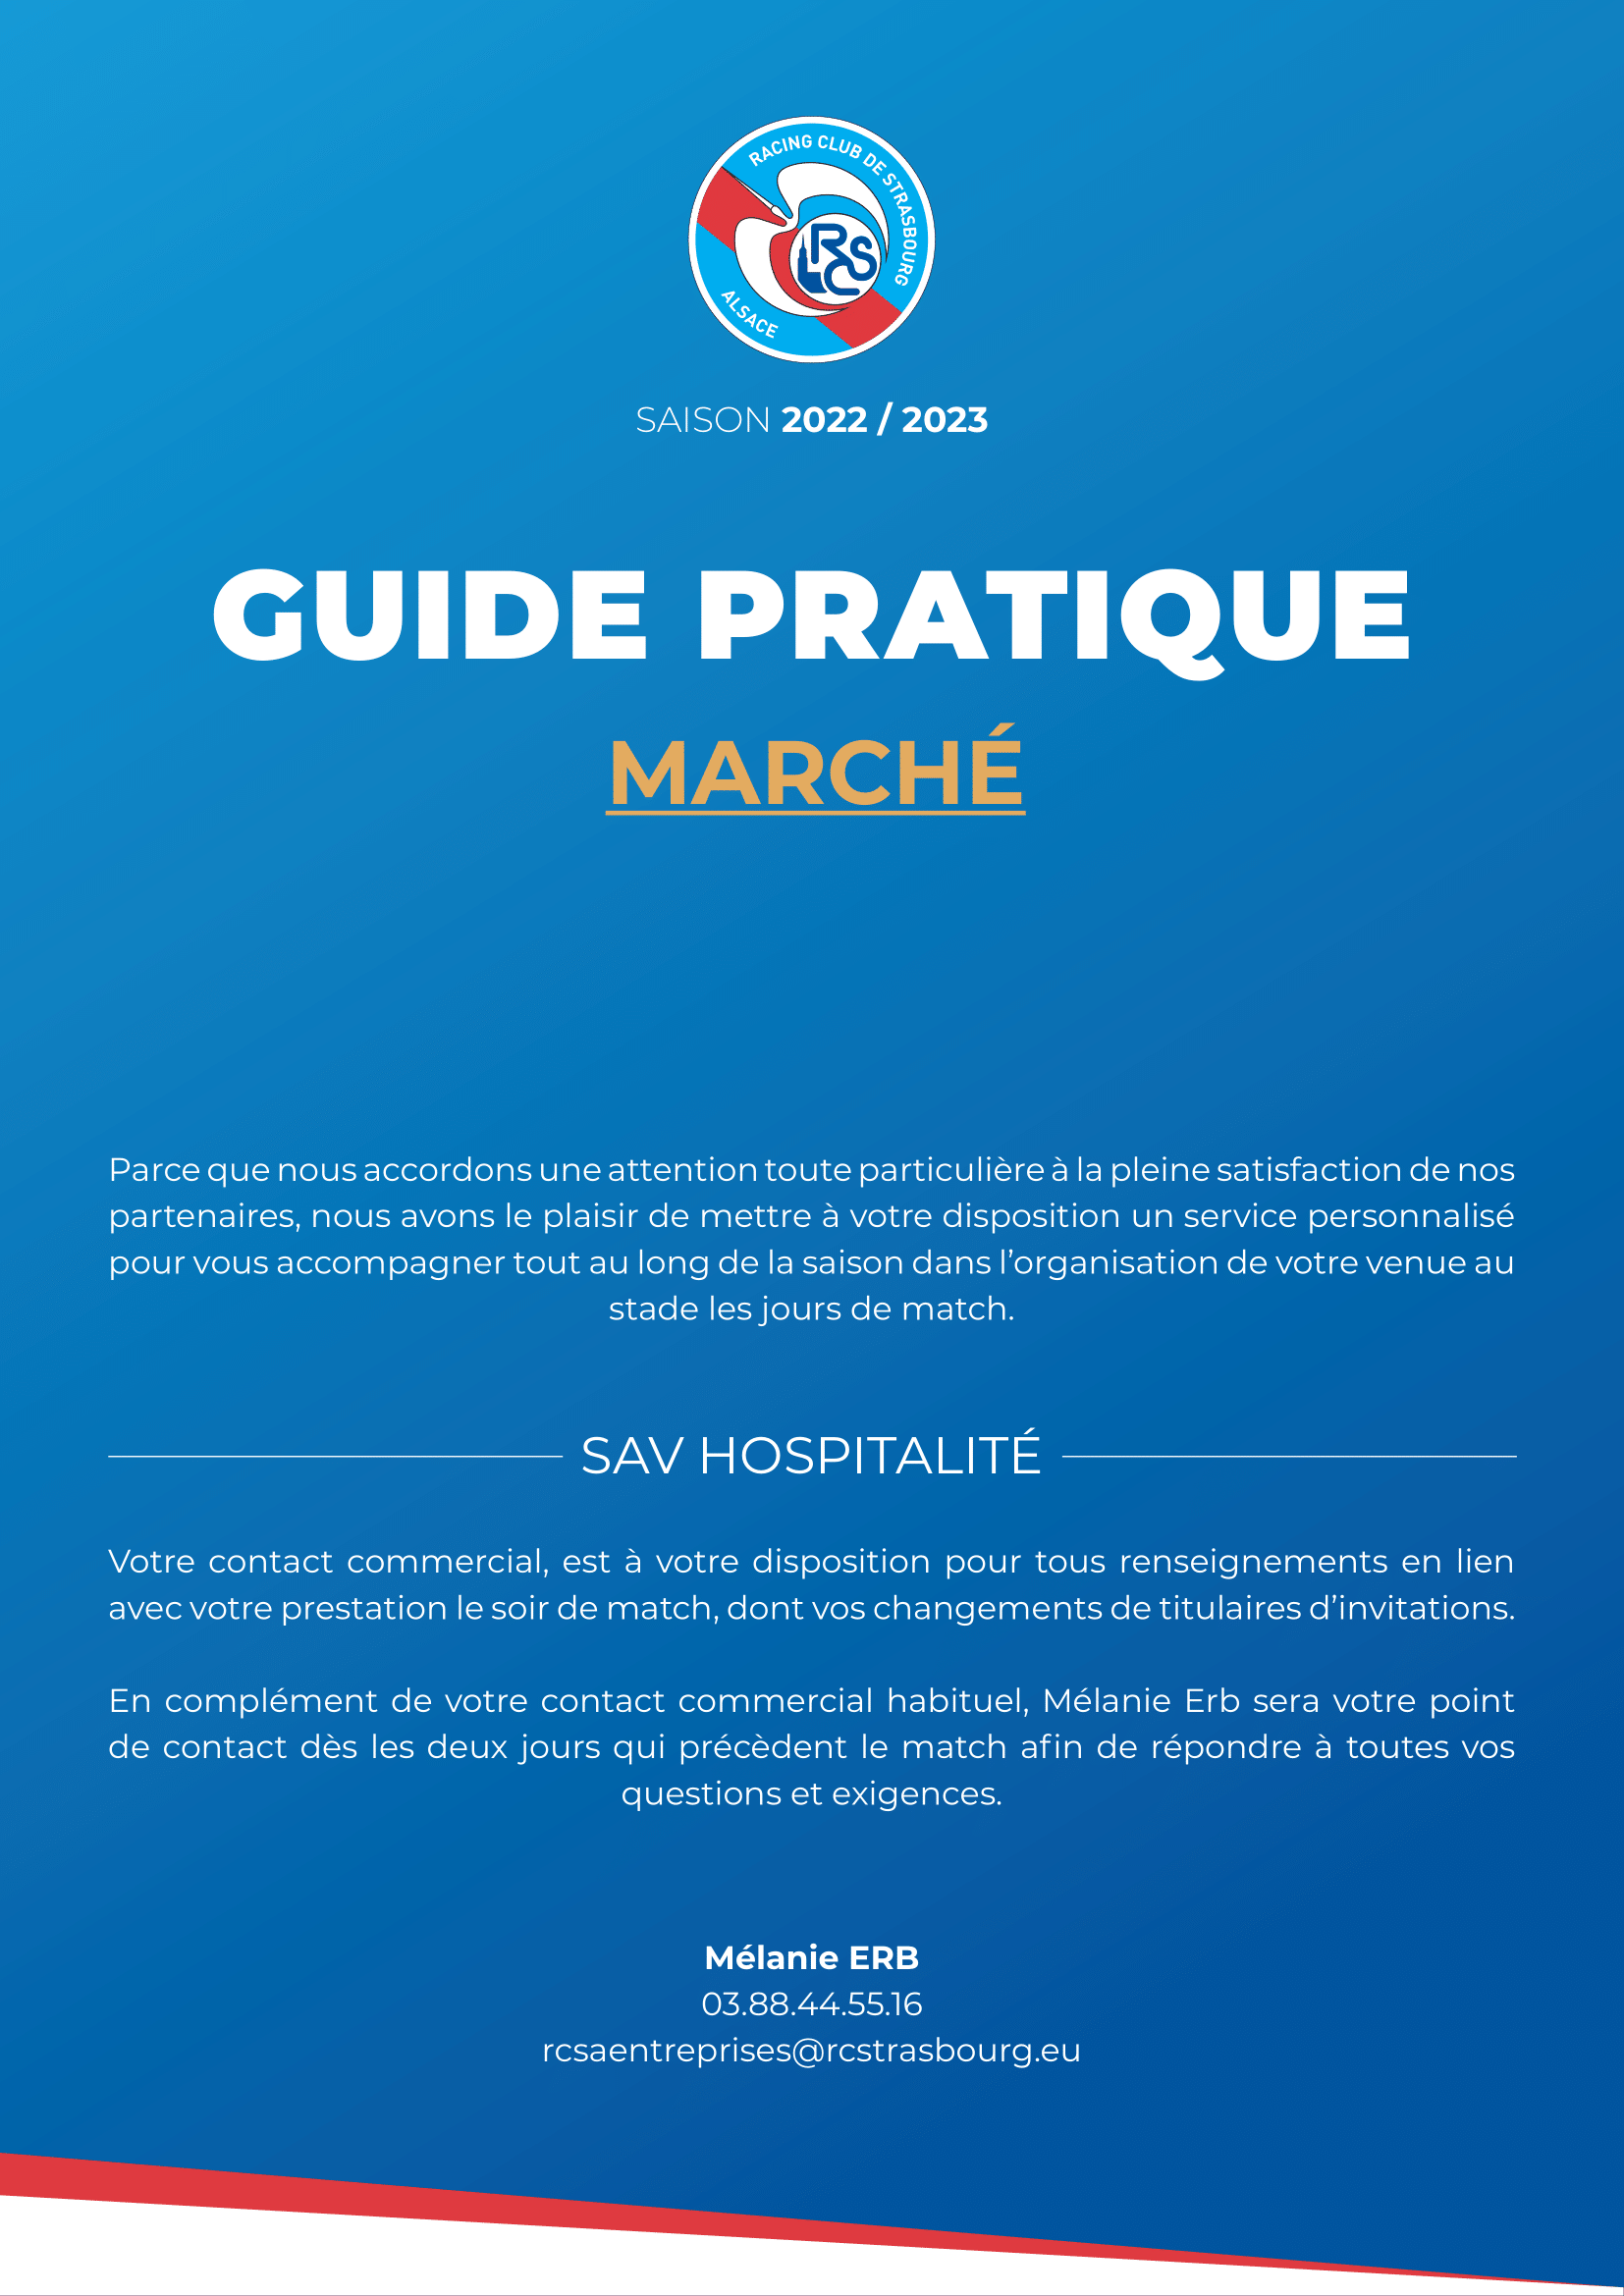 Guide Pratique Marché (mi-temps après)